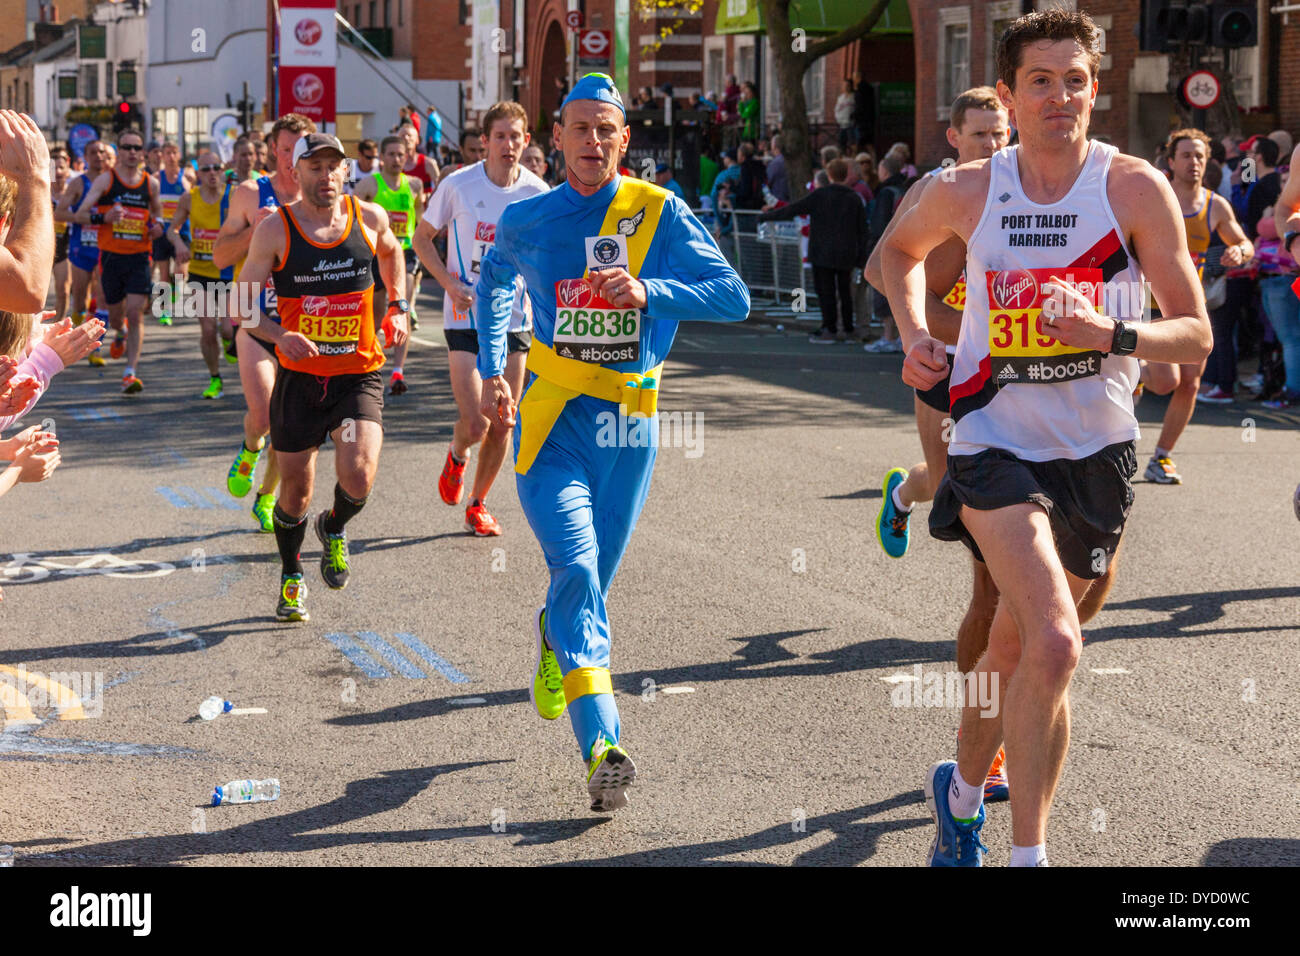 London UK. 13 avril 2014 Virgin London Marathon Runner 26836 argent y compris David Stone en bleu s'exécutant en tant que Jeff Tracy personnage de Crédit : John Henshall Thunderbirds/Alamy Live News JMH6133 Banque D'Images